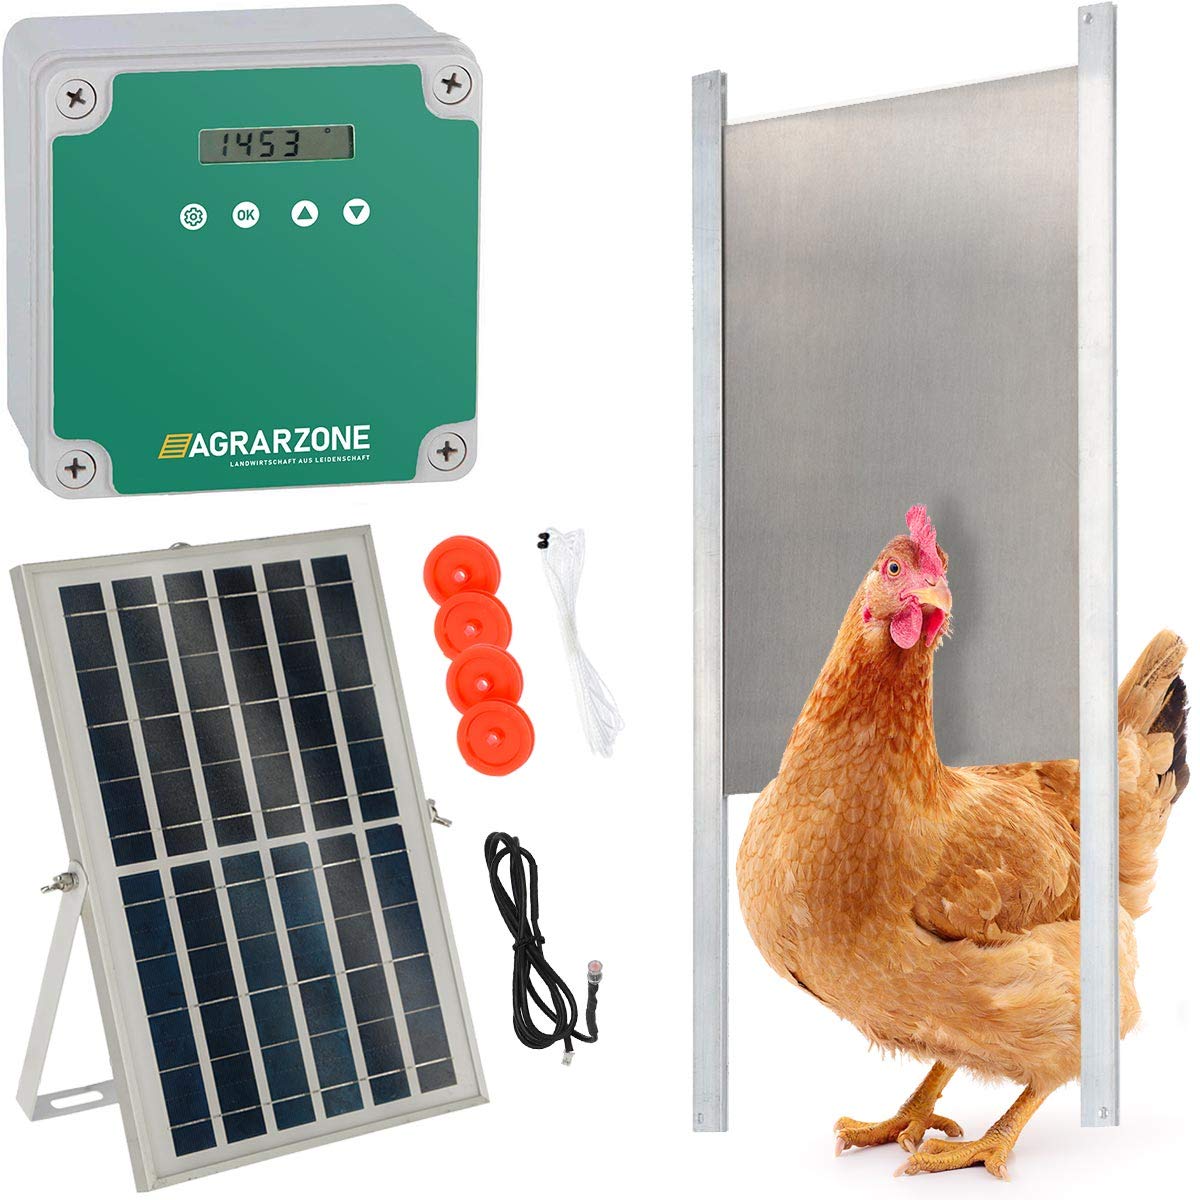 1. Puerta solar automática para gallinas